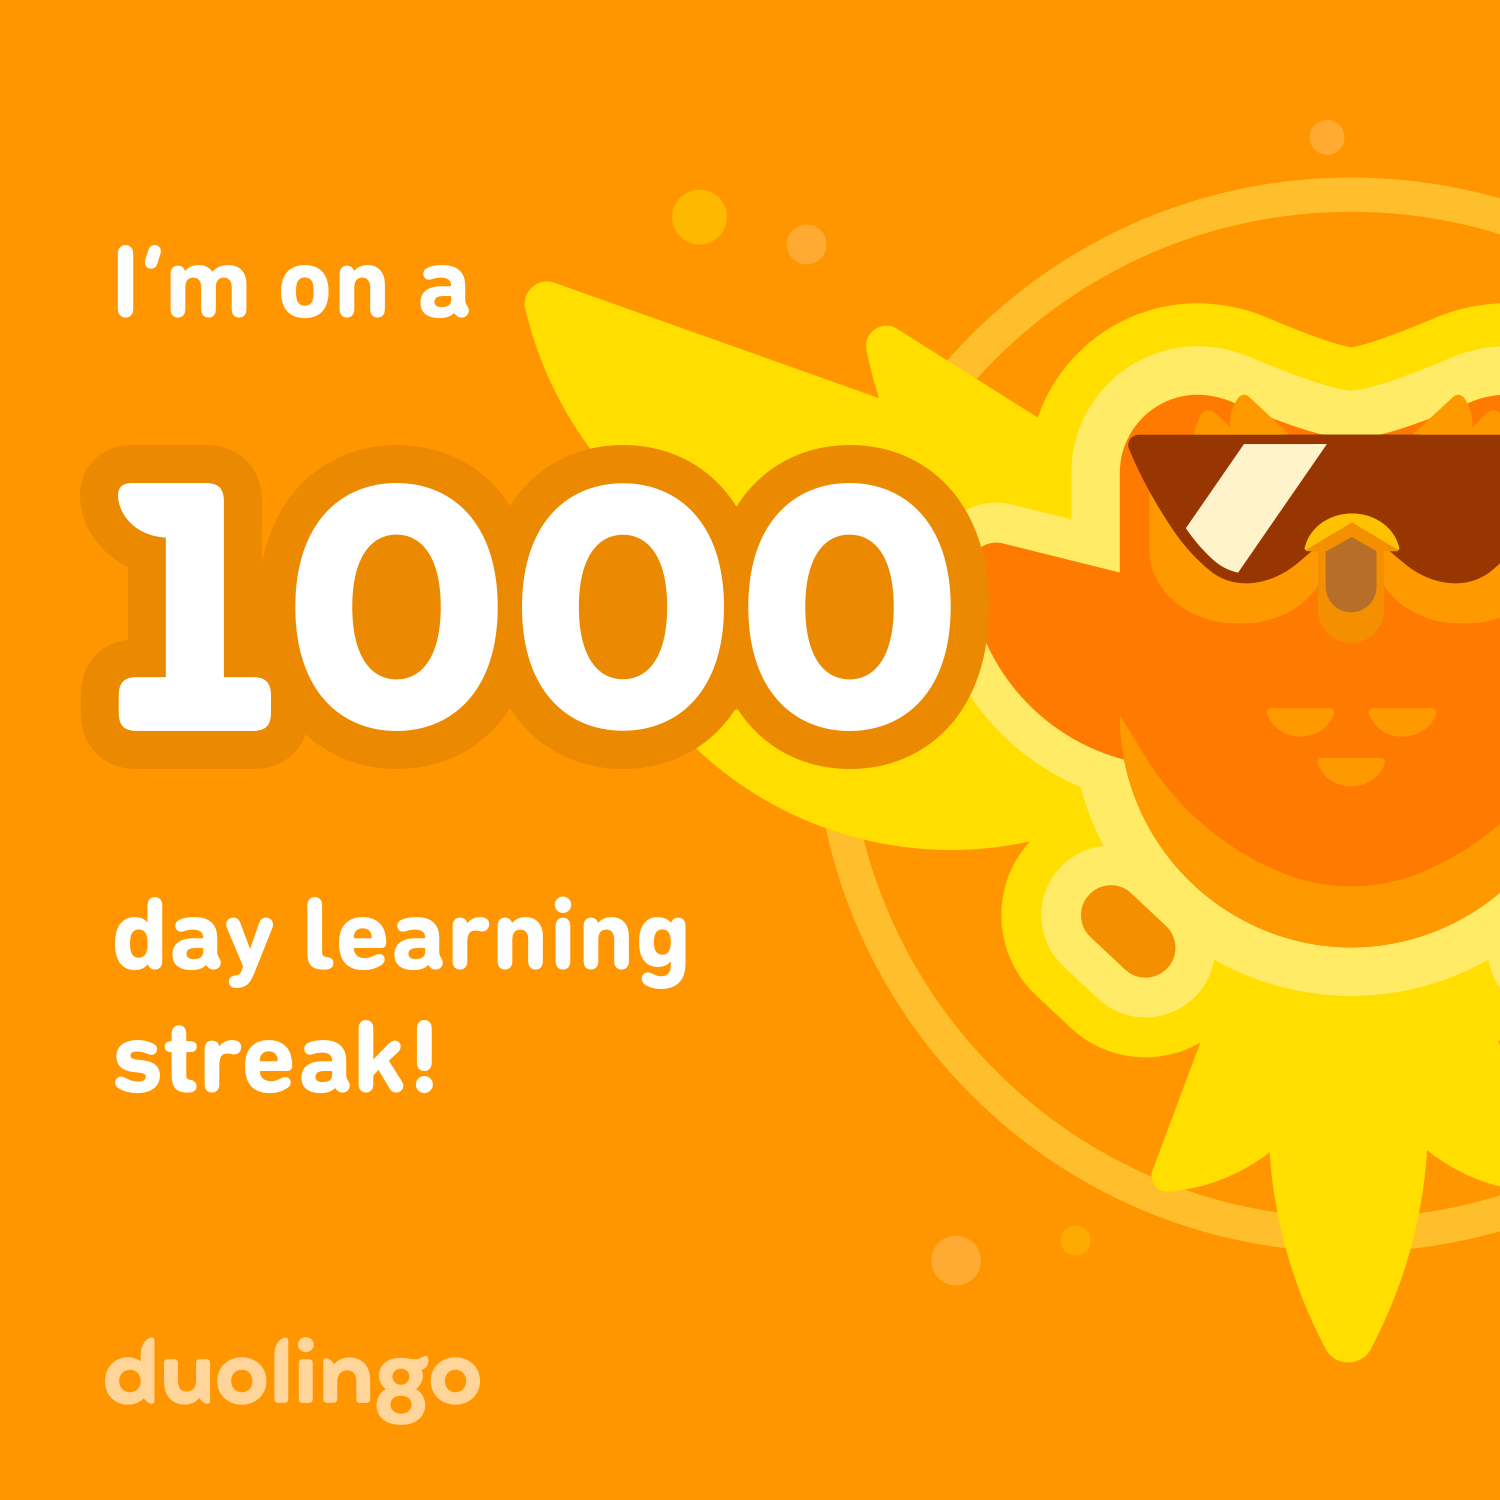 A screenshot of Duolingo showing a 1,000 day streak